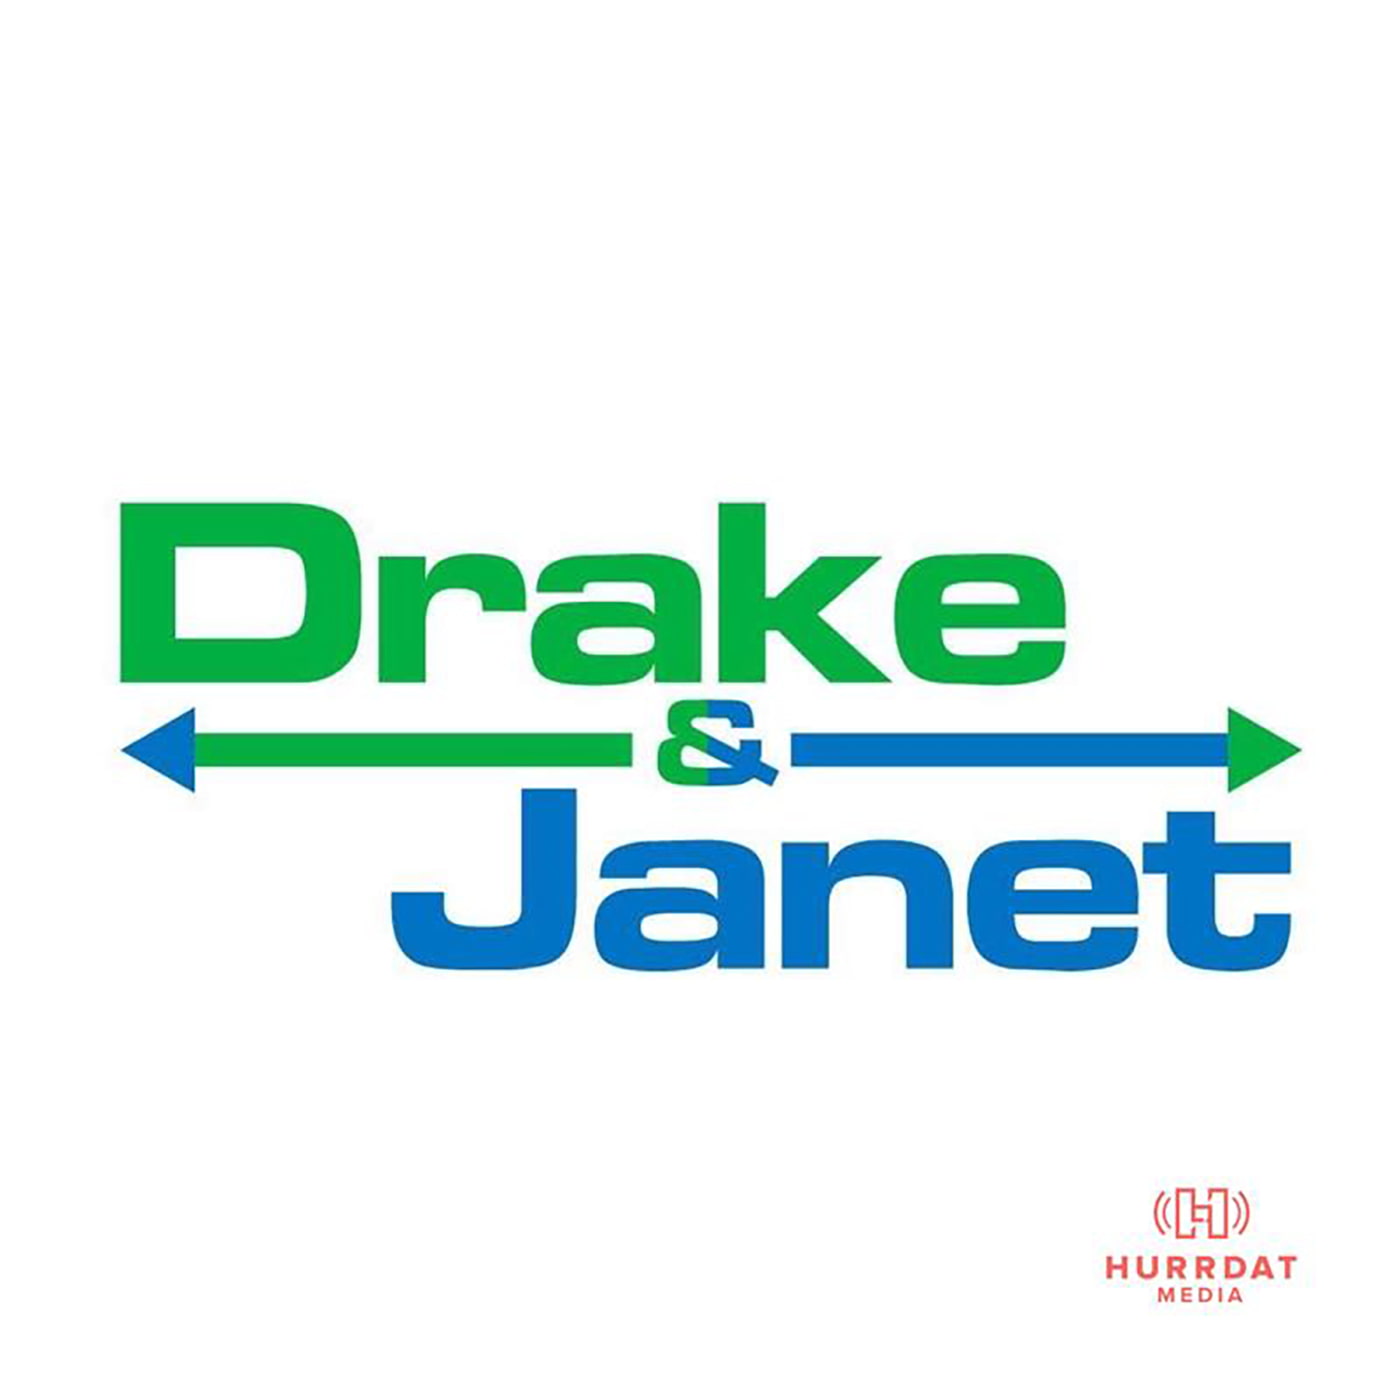 Drake & Janet